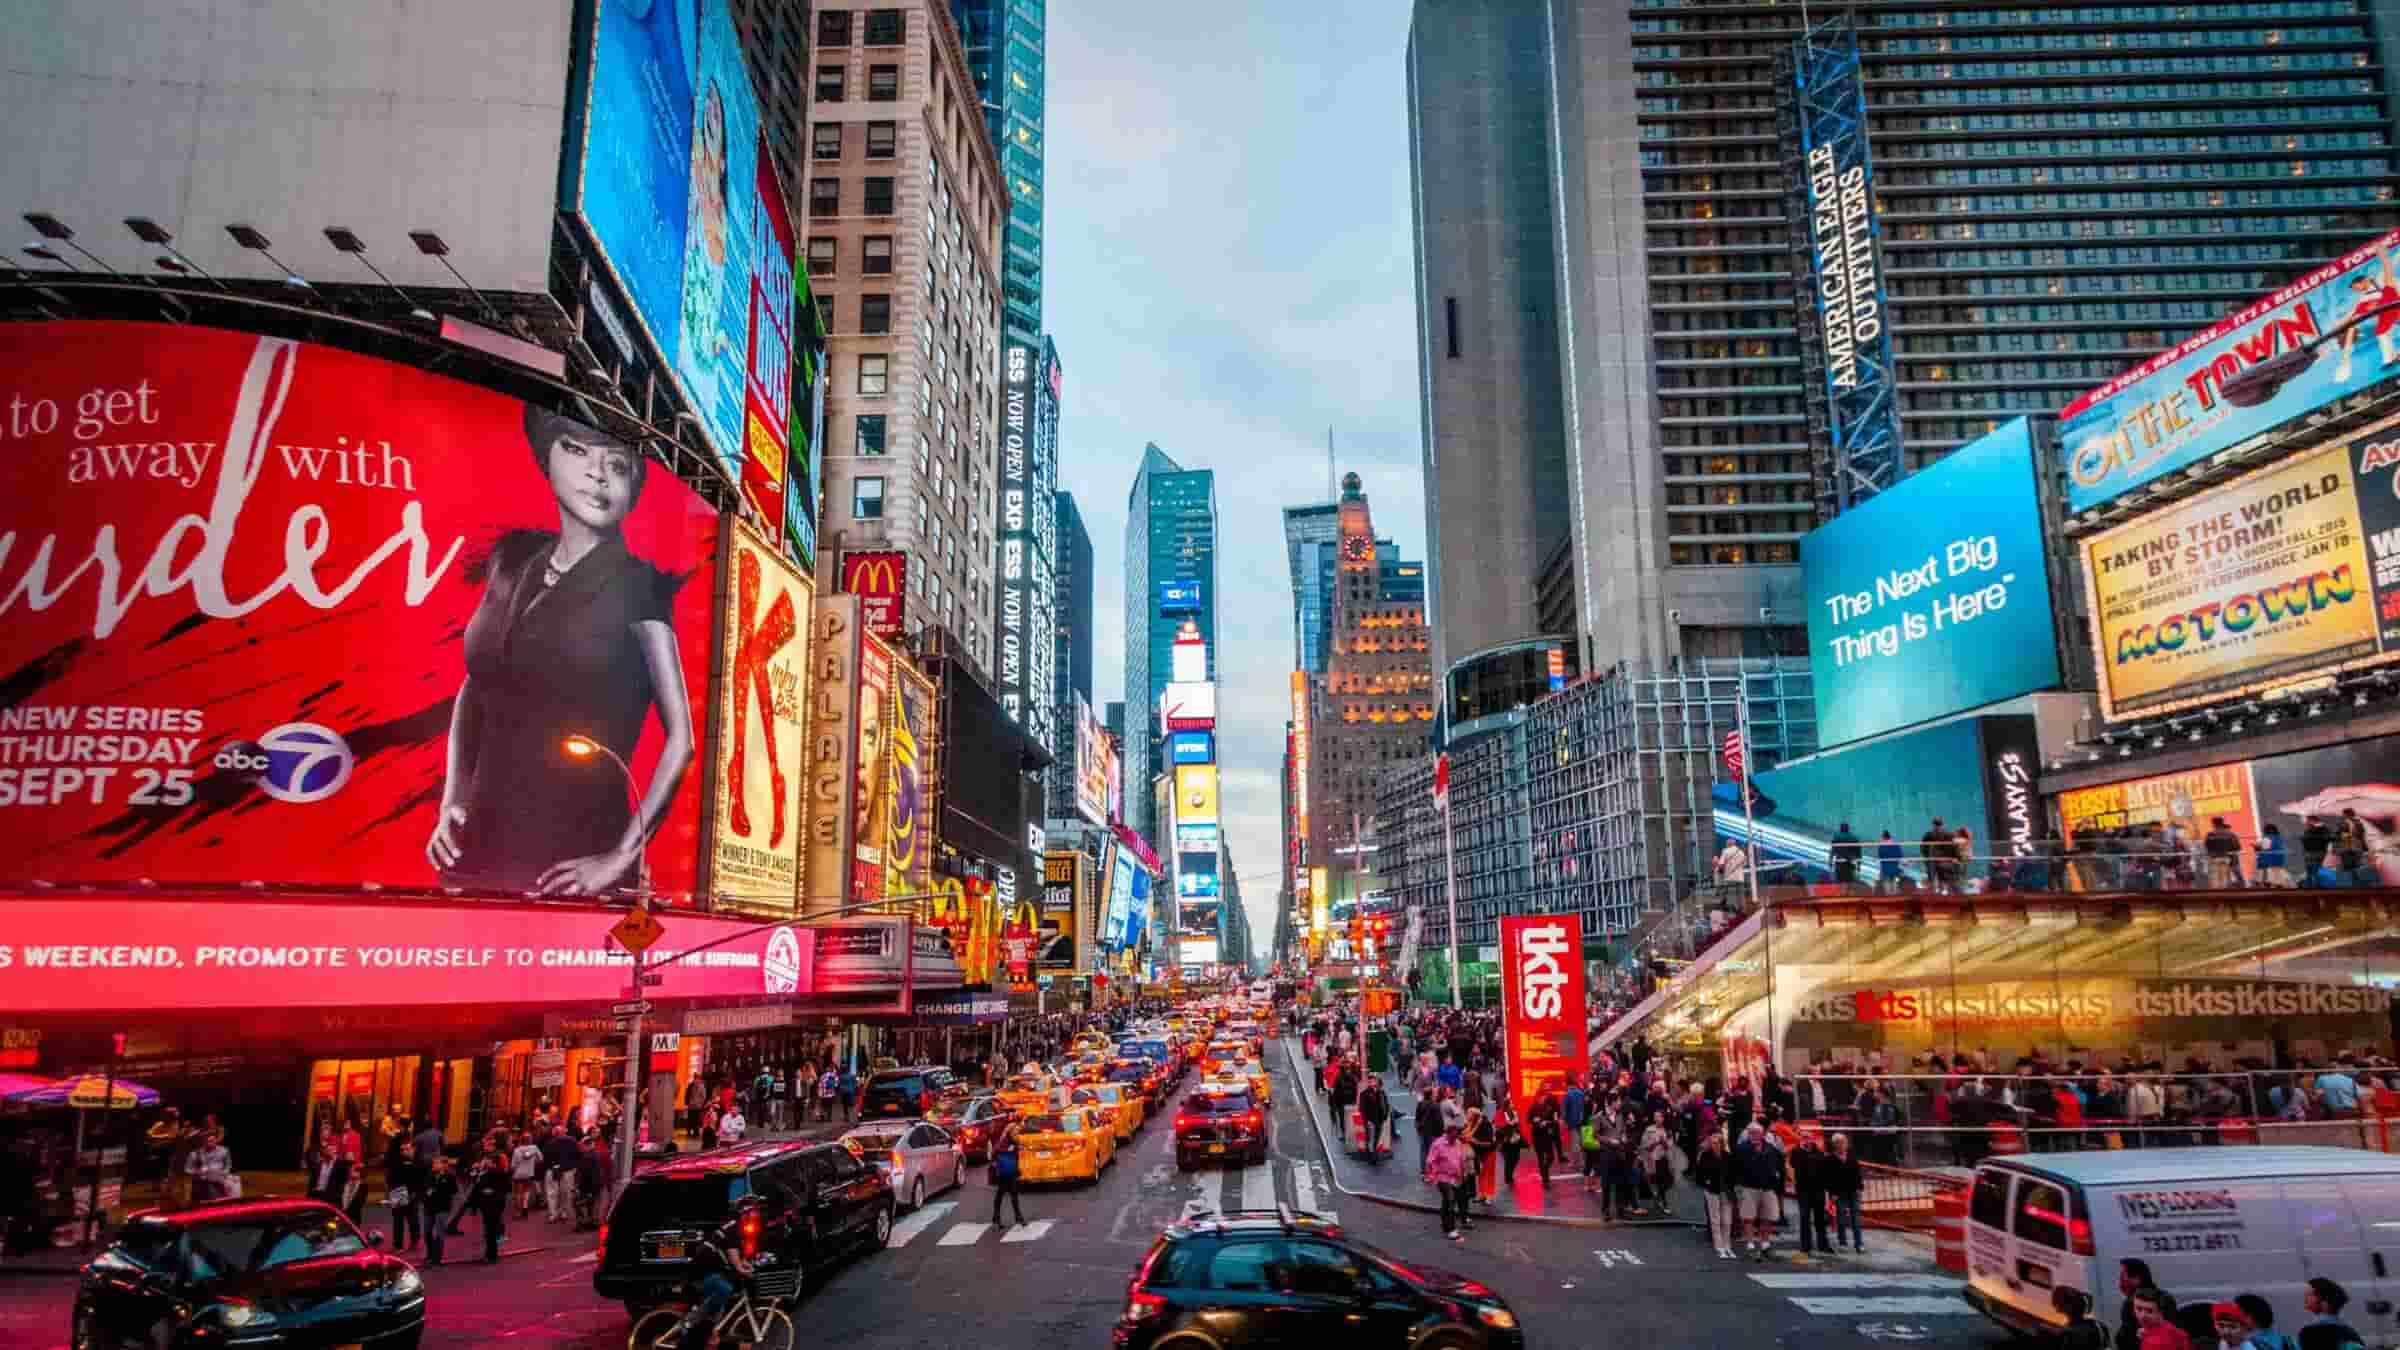 quảng trường thời đại (Times Square)